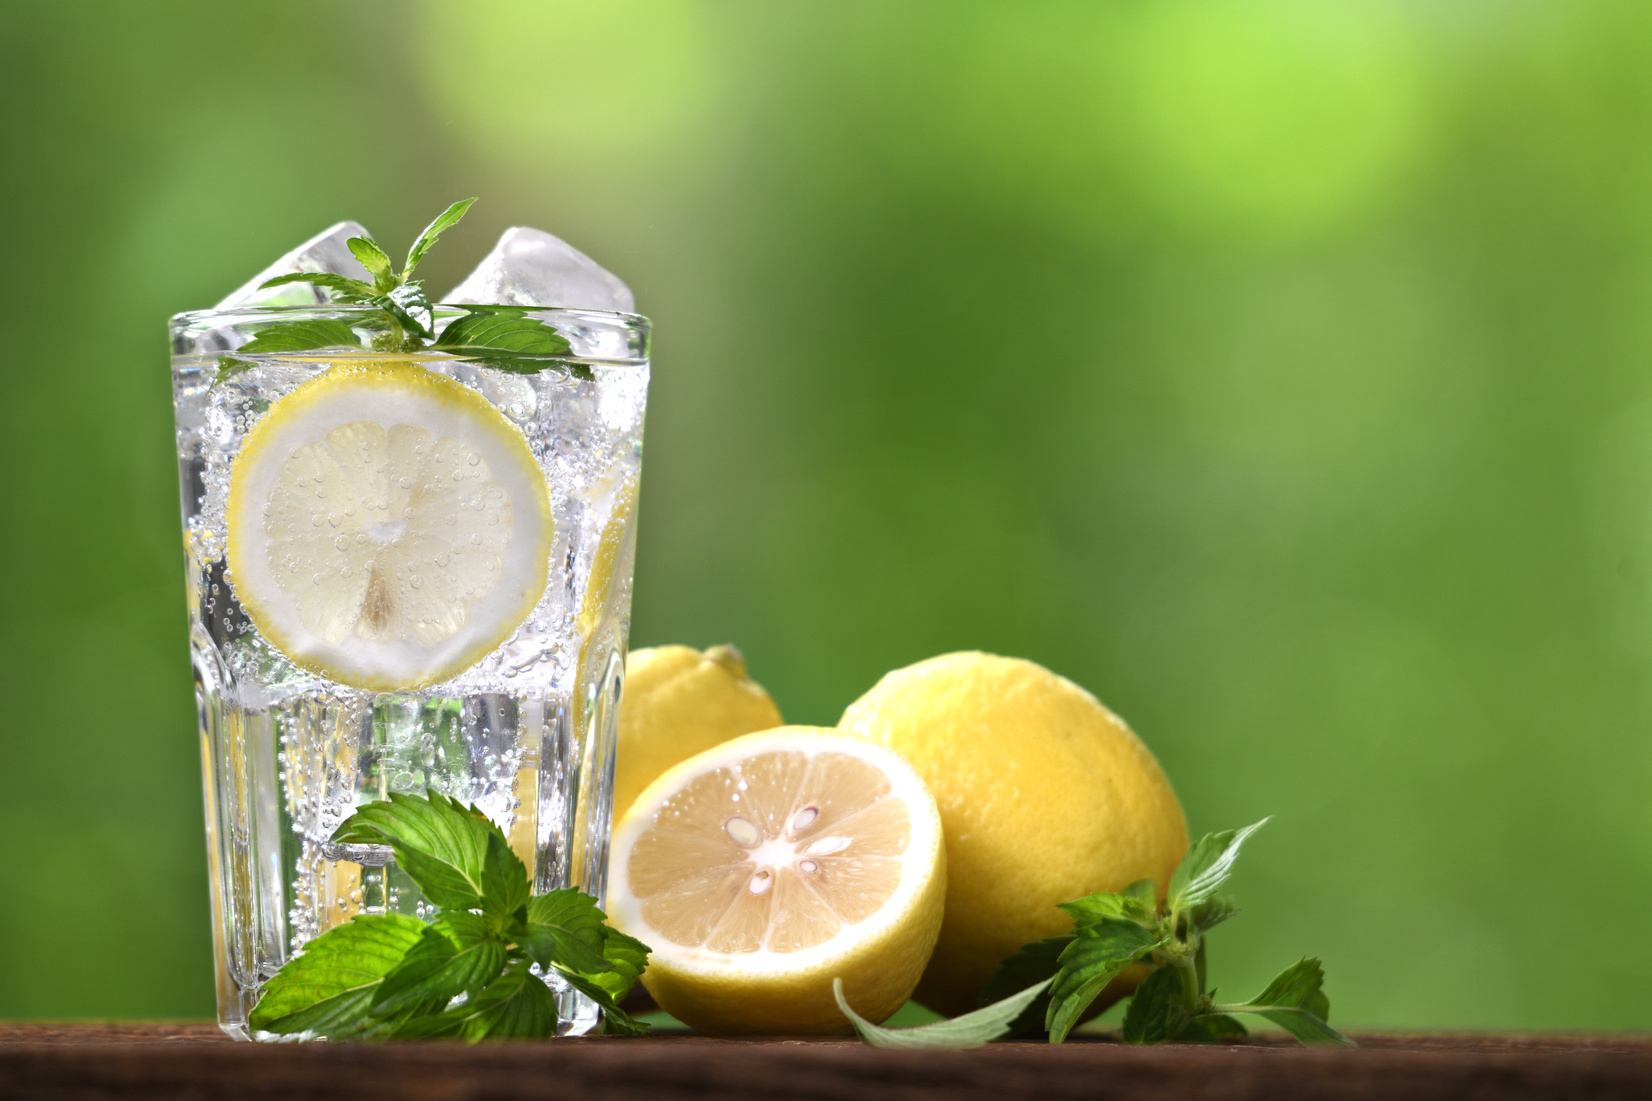 Lemon soda with sliced lemon in glass on nature background